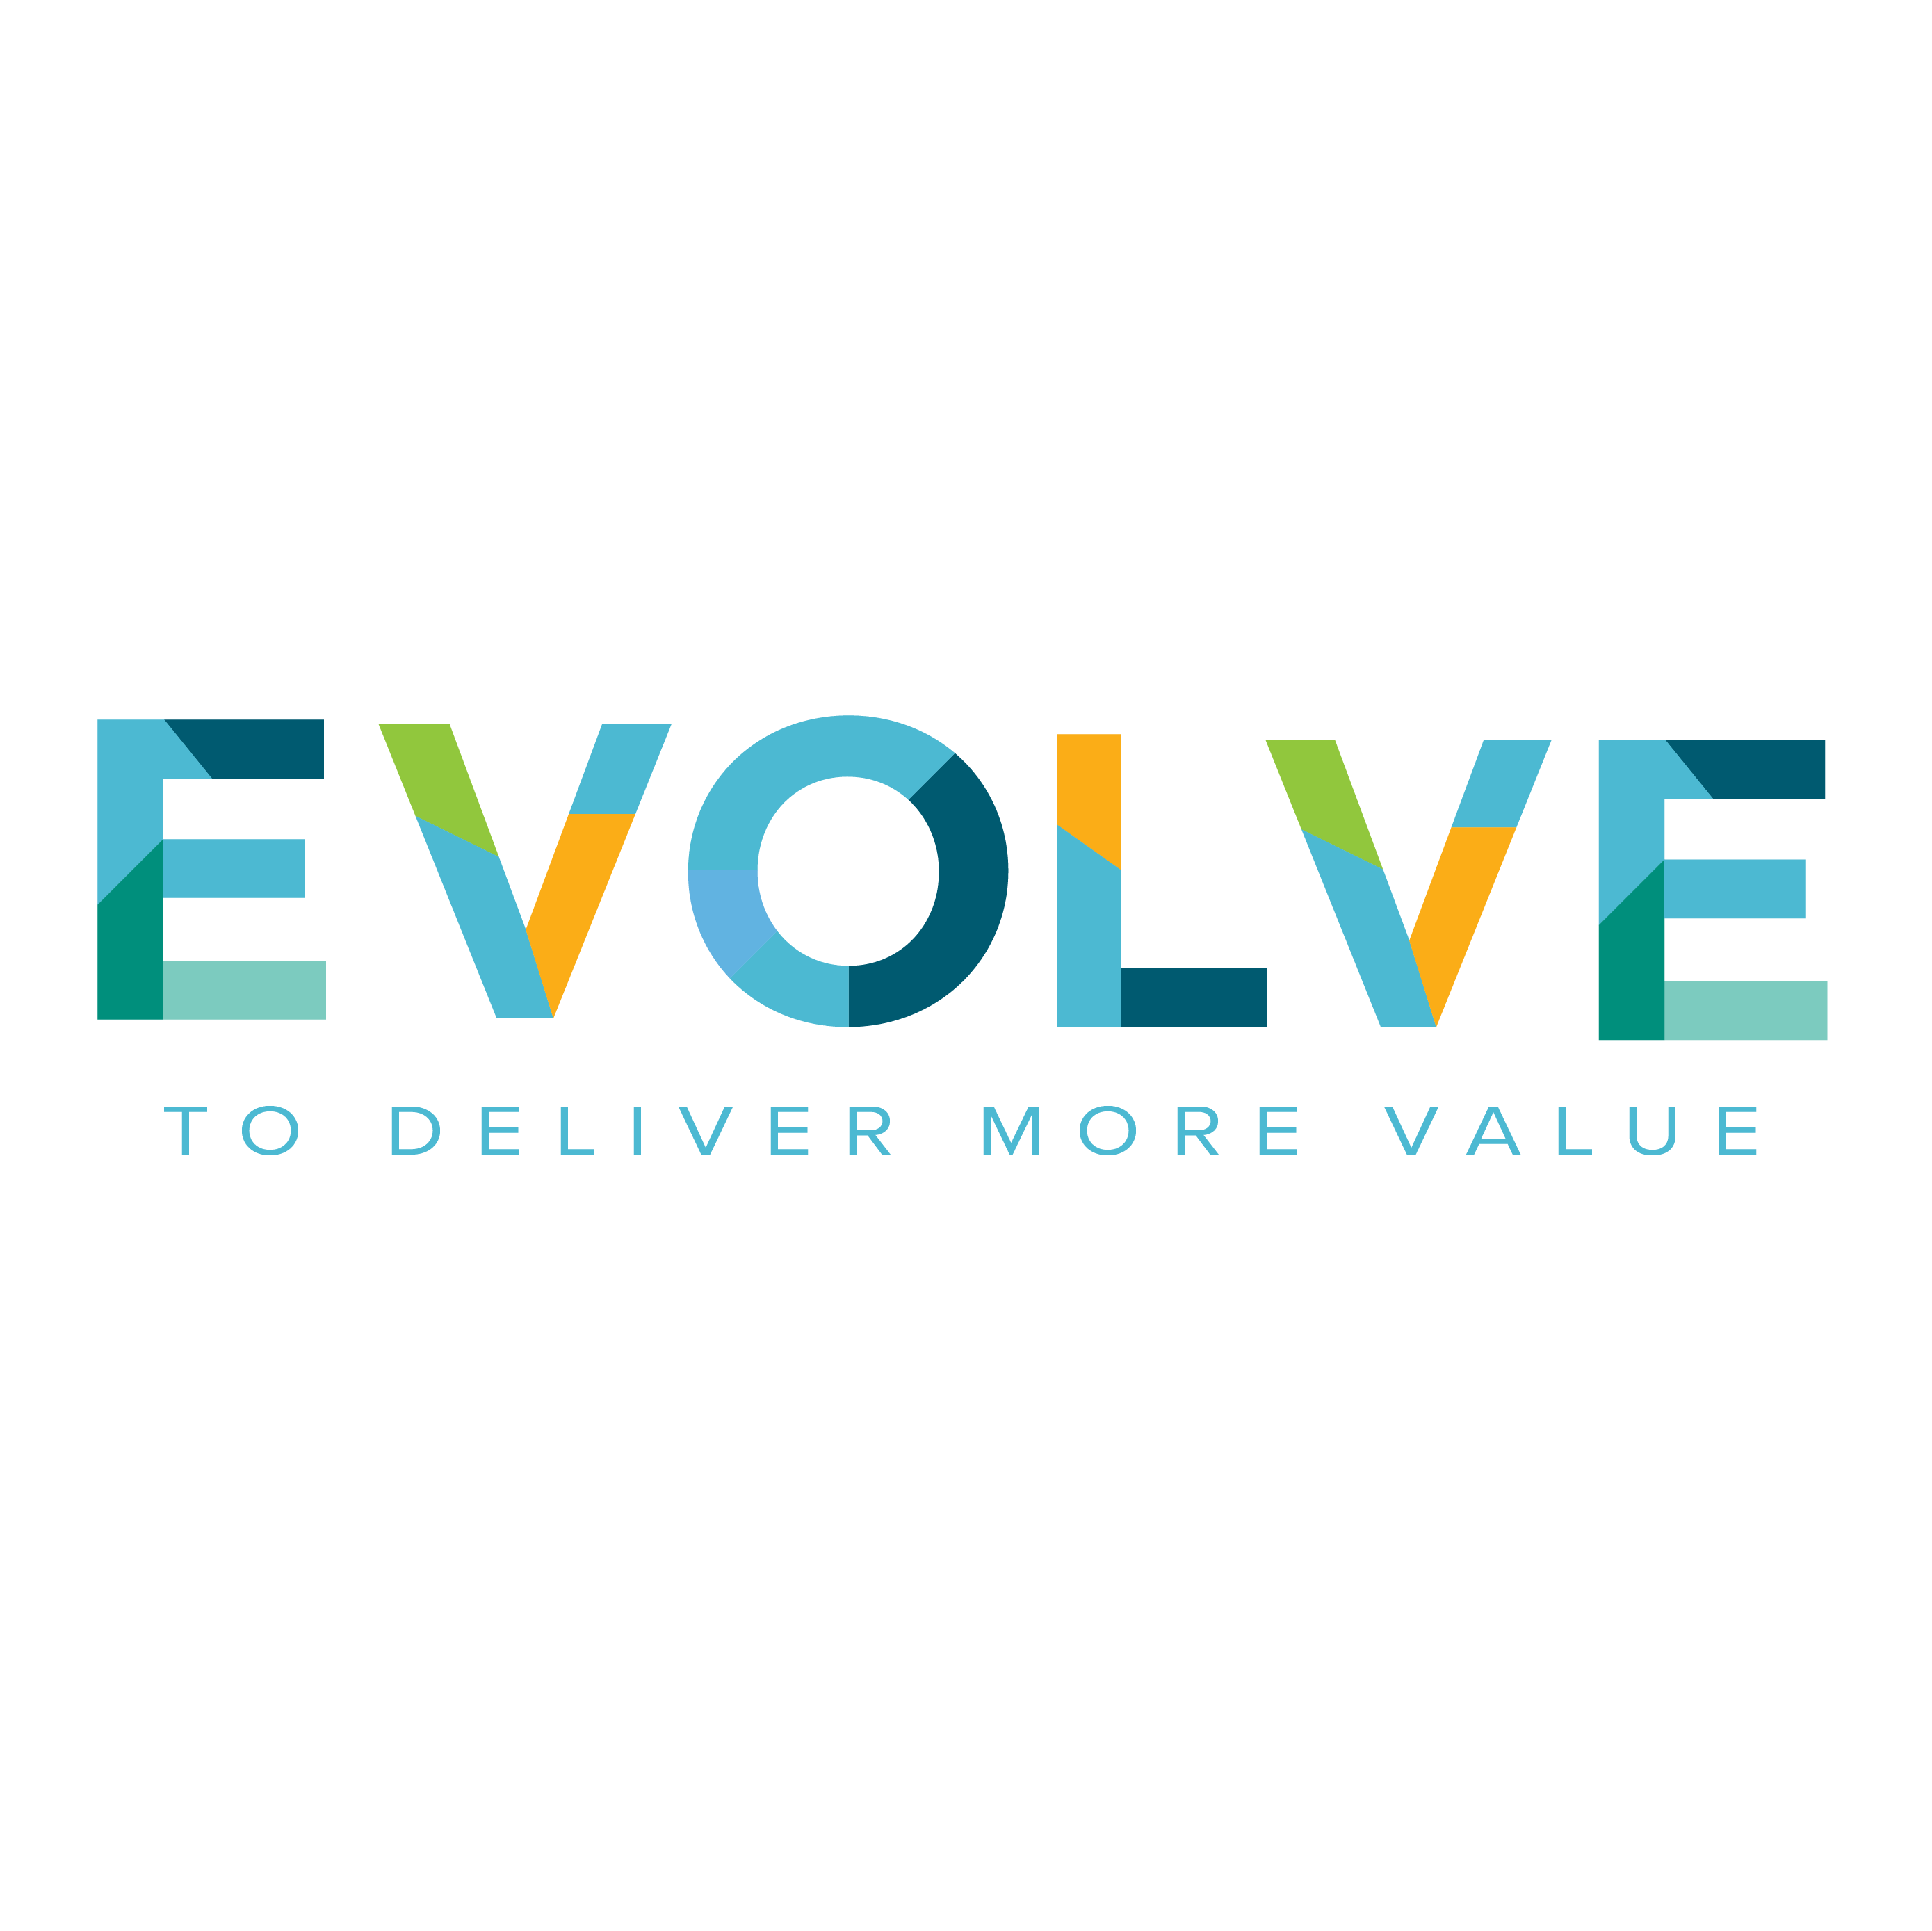 Evolve to deliver more value